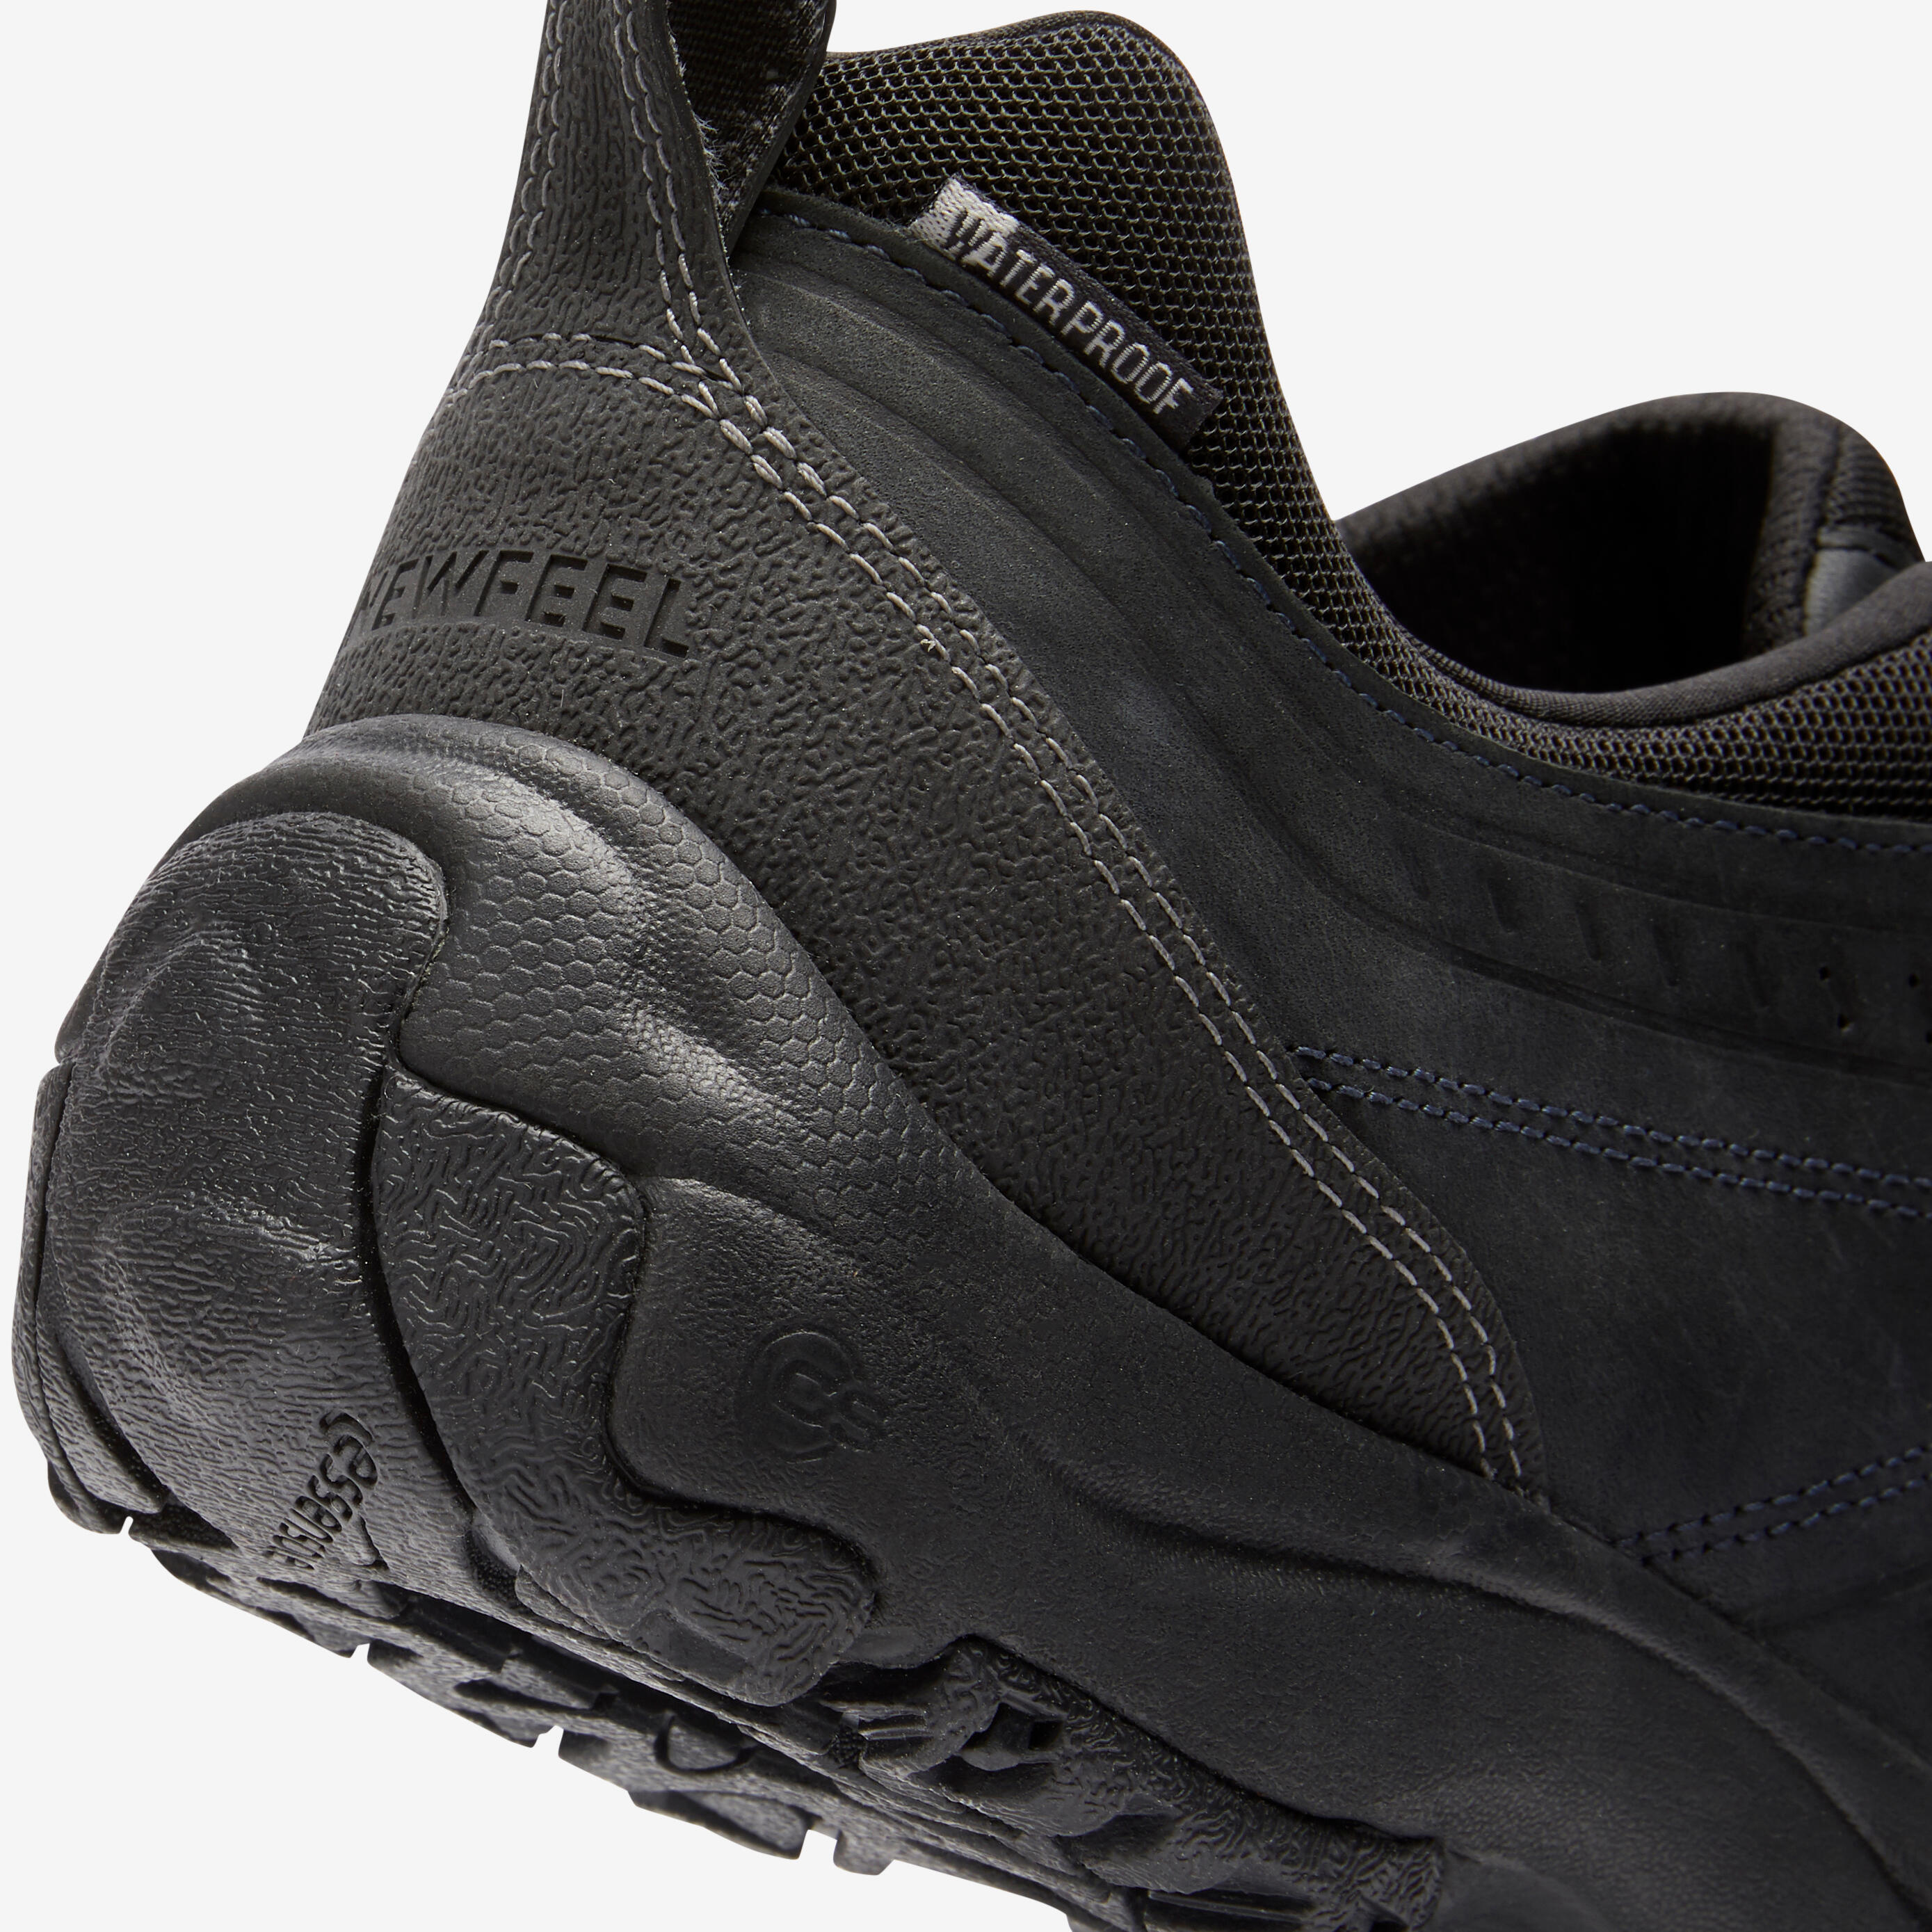 Nakuru Waterproof Men's Urban Waterproof Walking Shoes - Black Leather 9/25